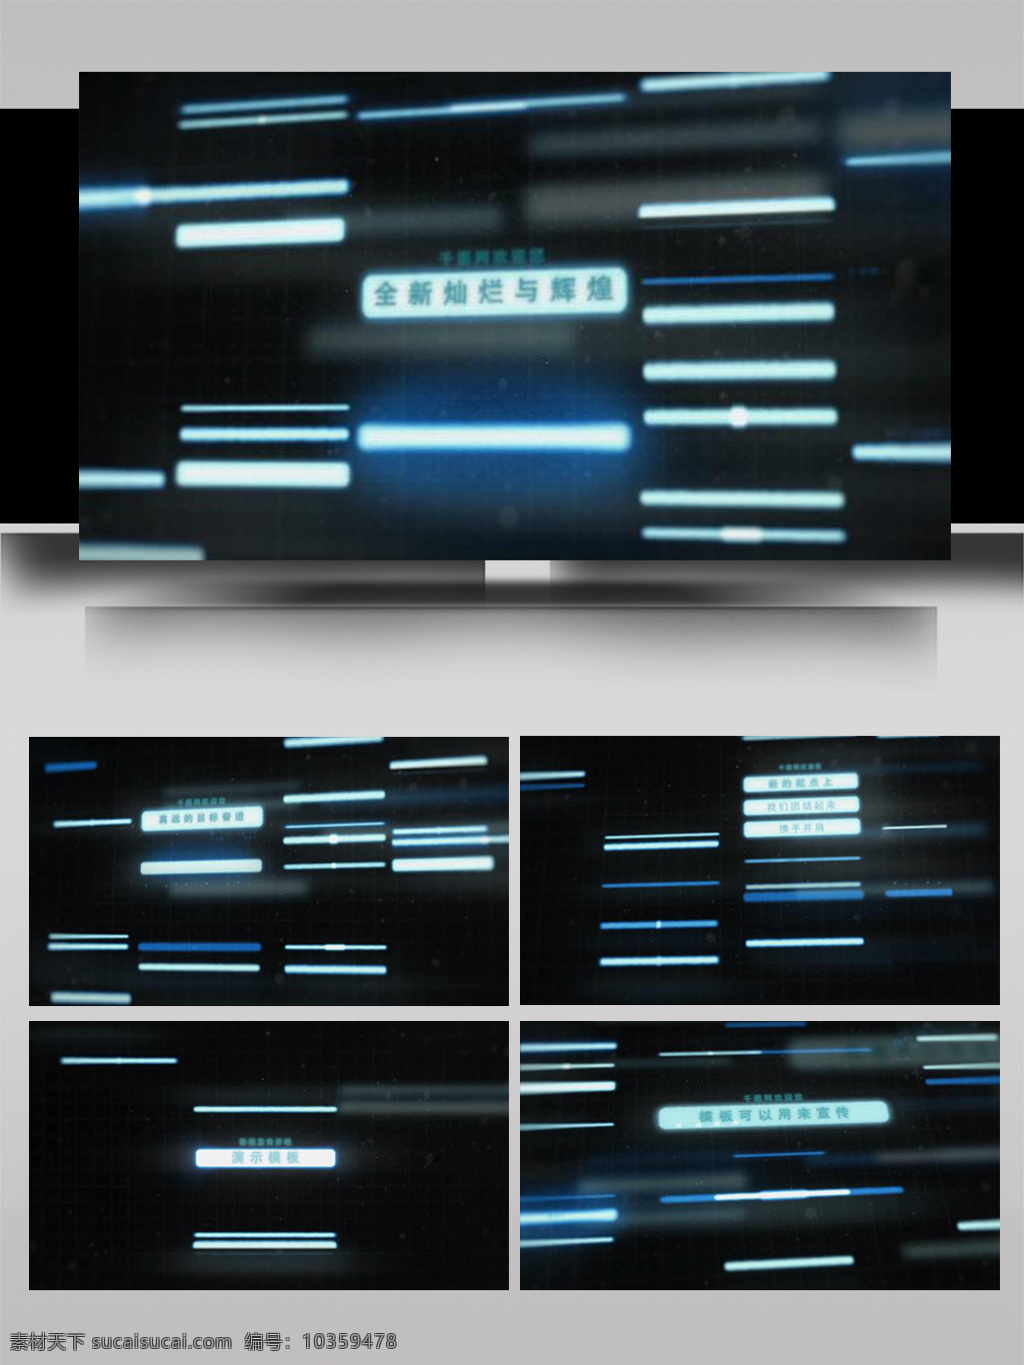 科技 信息 电子 数据 罗列 展示 ae 模板 数字 动感 大气 立体 互联网 空间 线 片头 扩散 组合 光影 三维